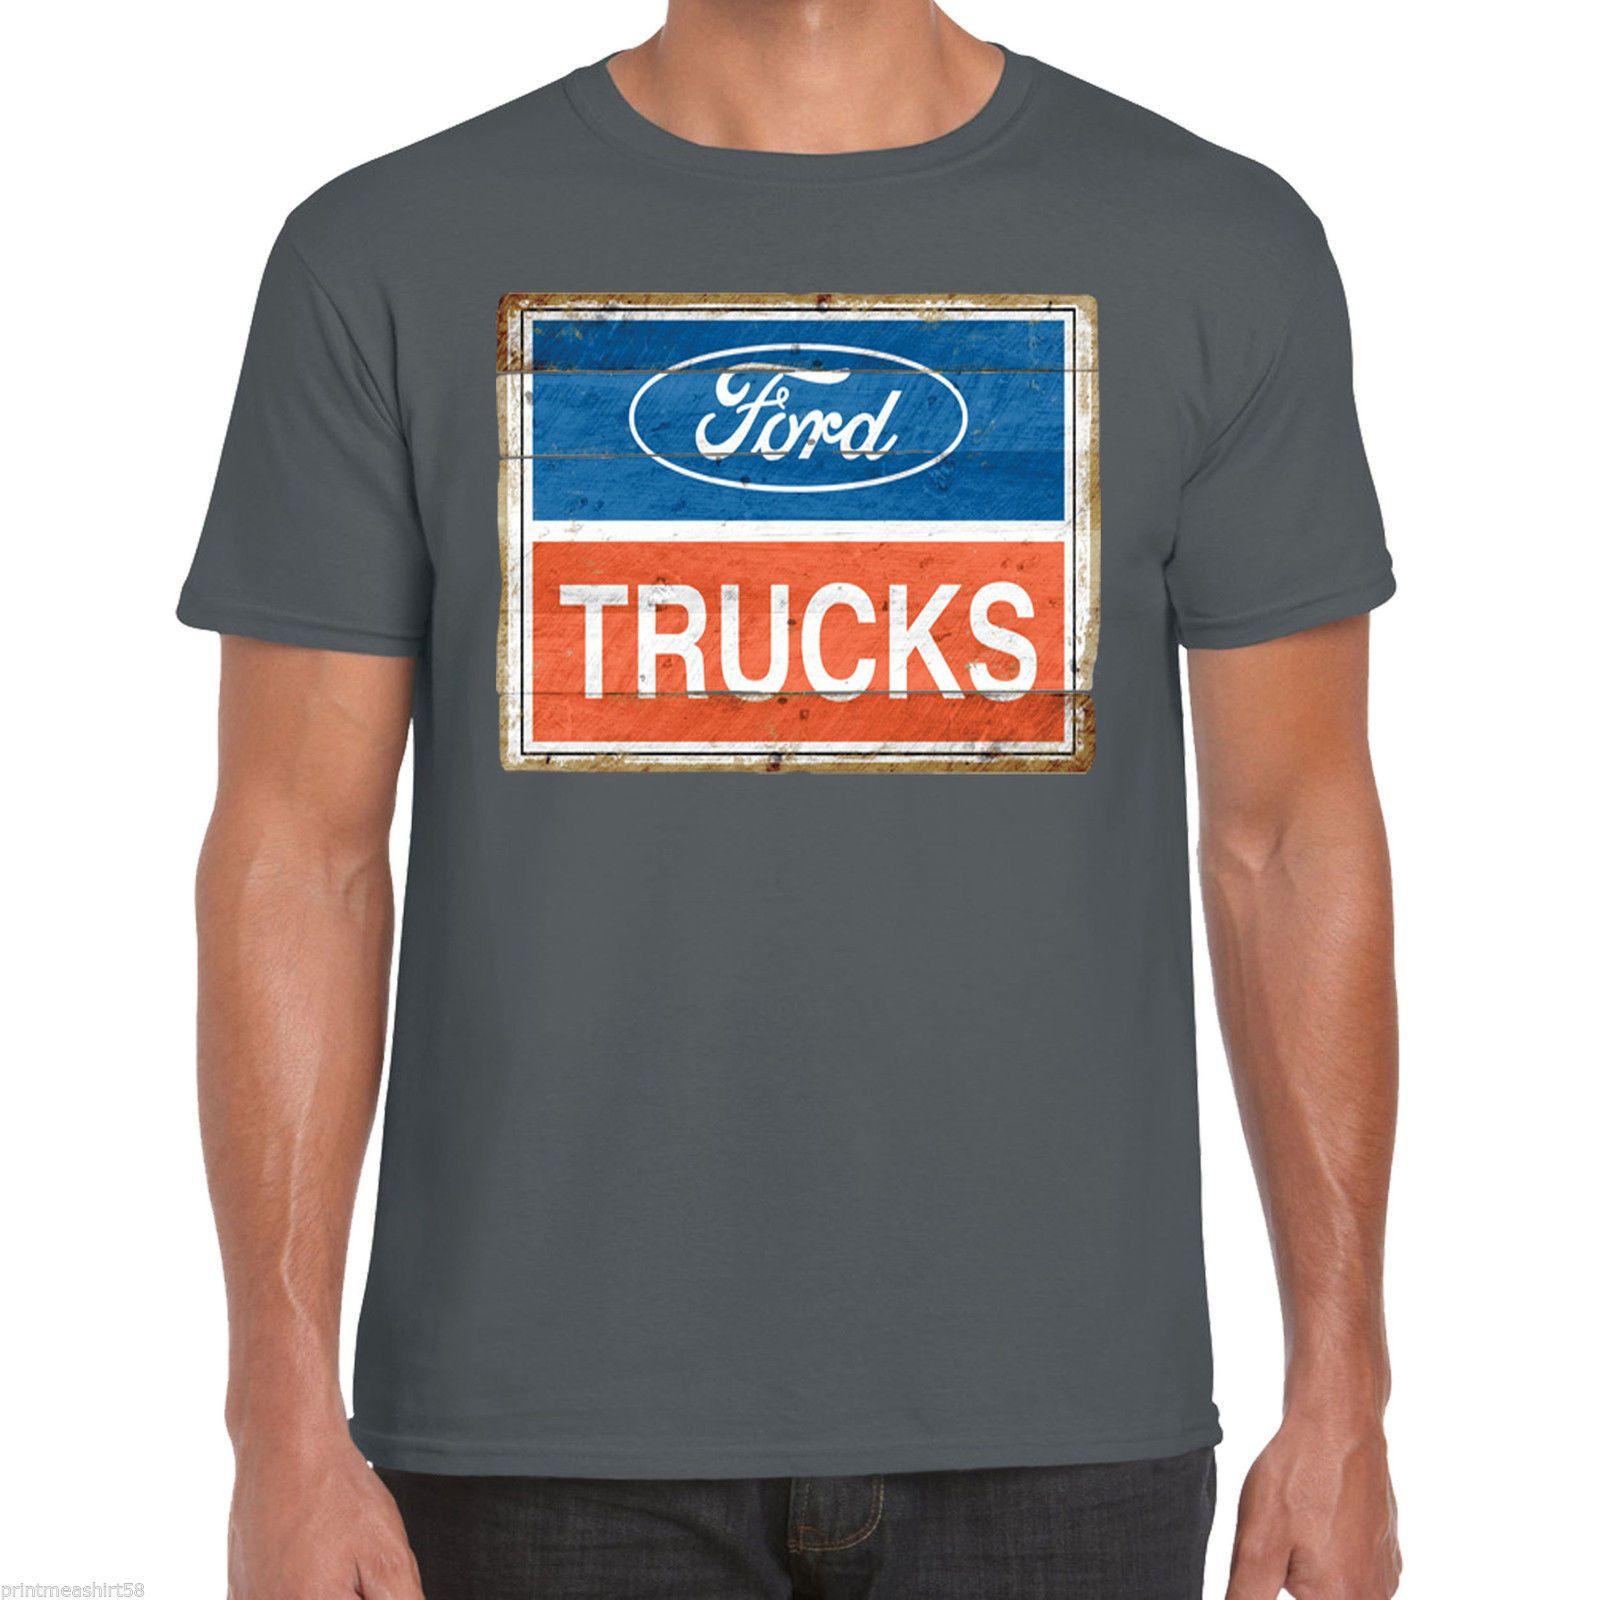 Vintage American Car Company Logo - Ford Trucks T Shirt Logo Classic Vintage American Pick Up Truck F150